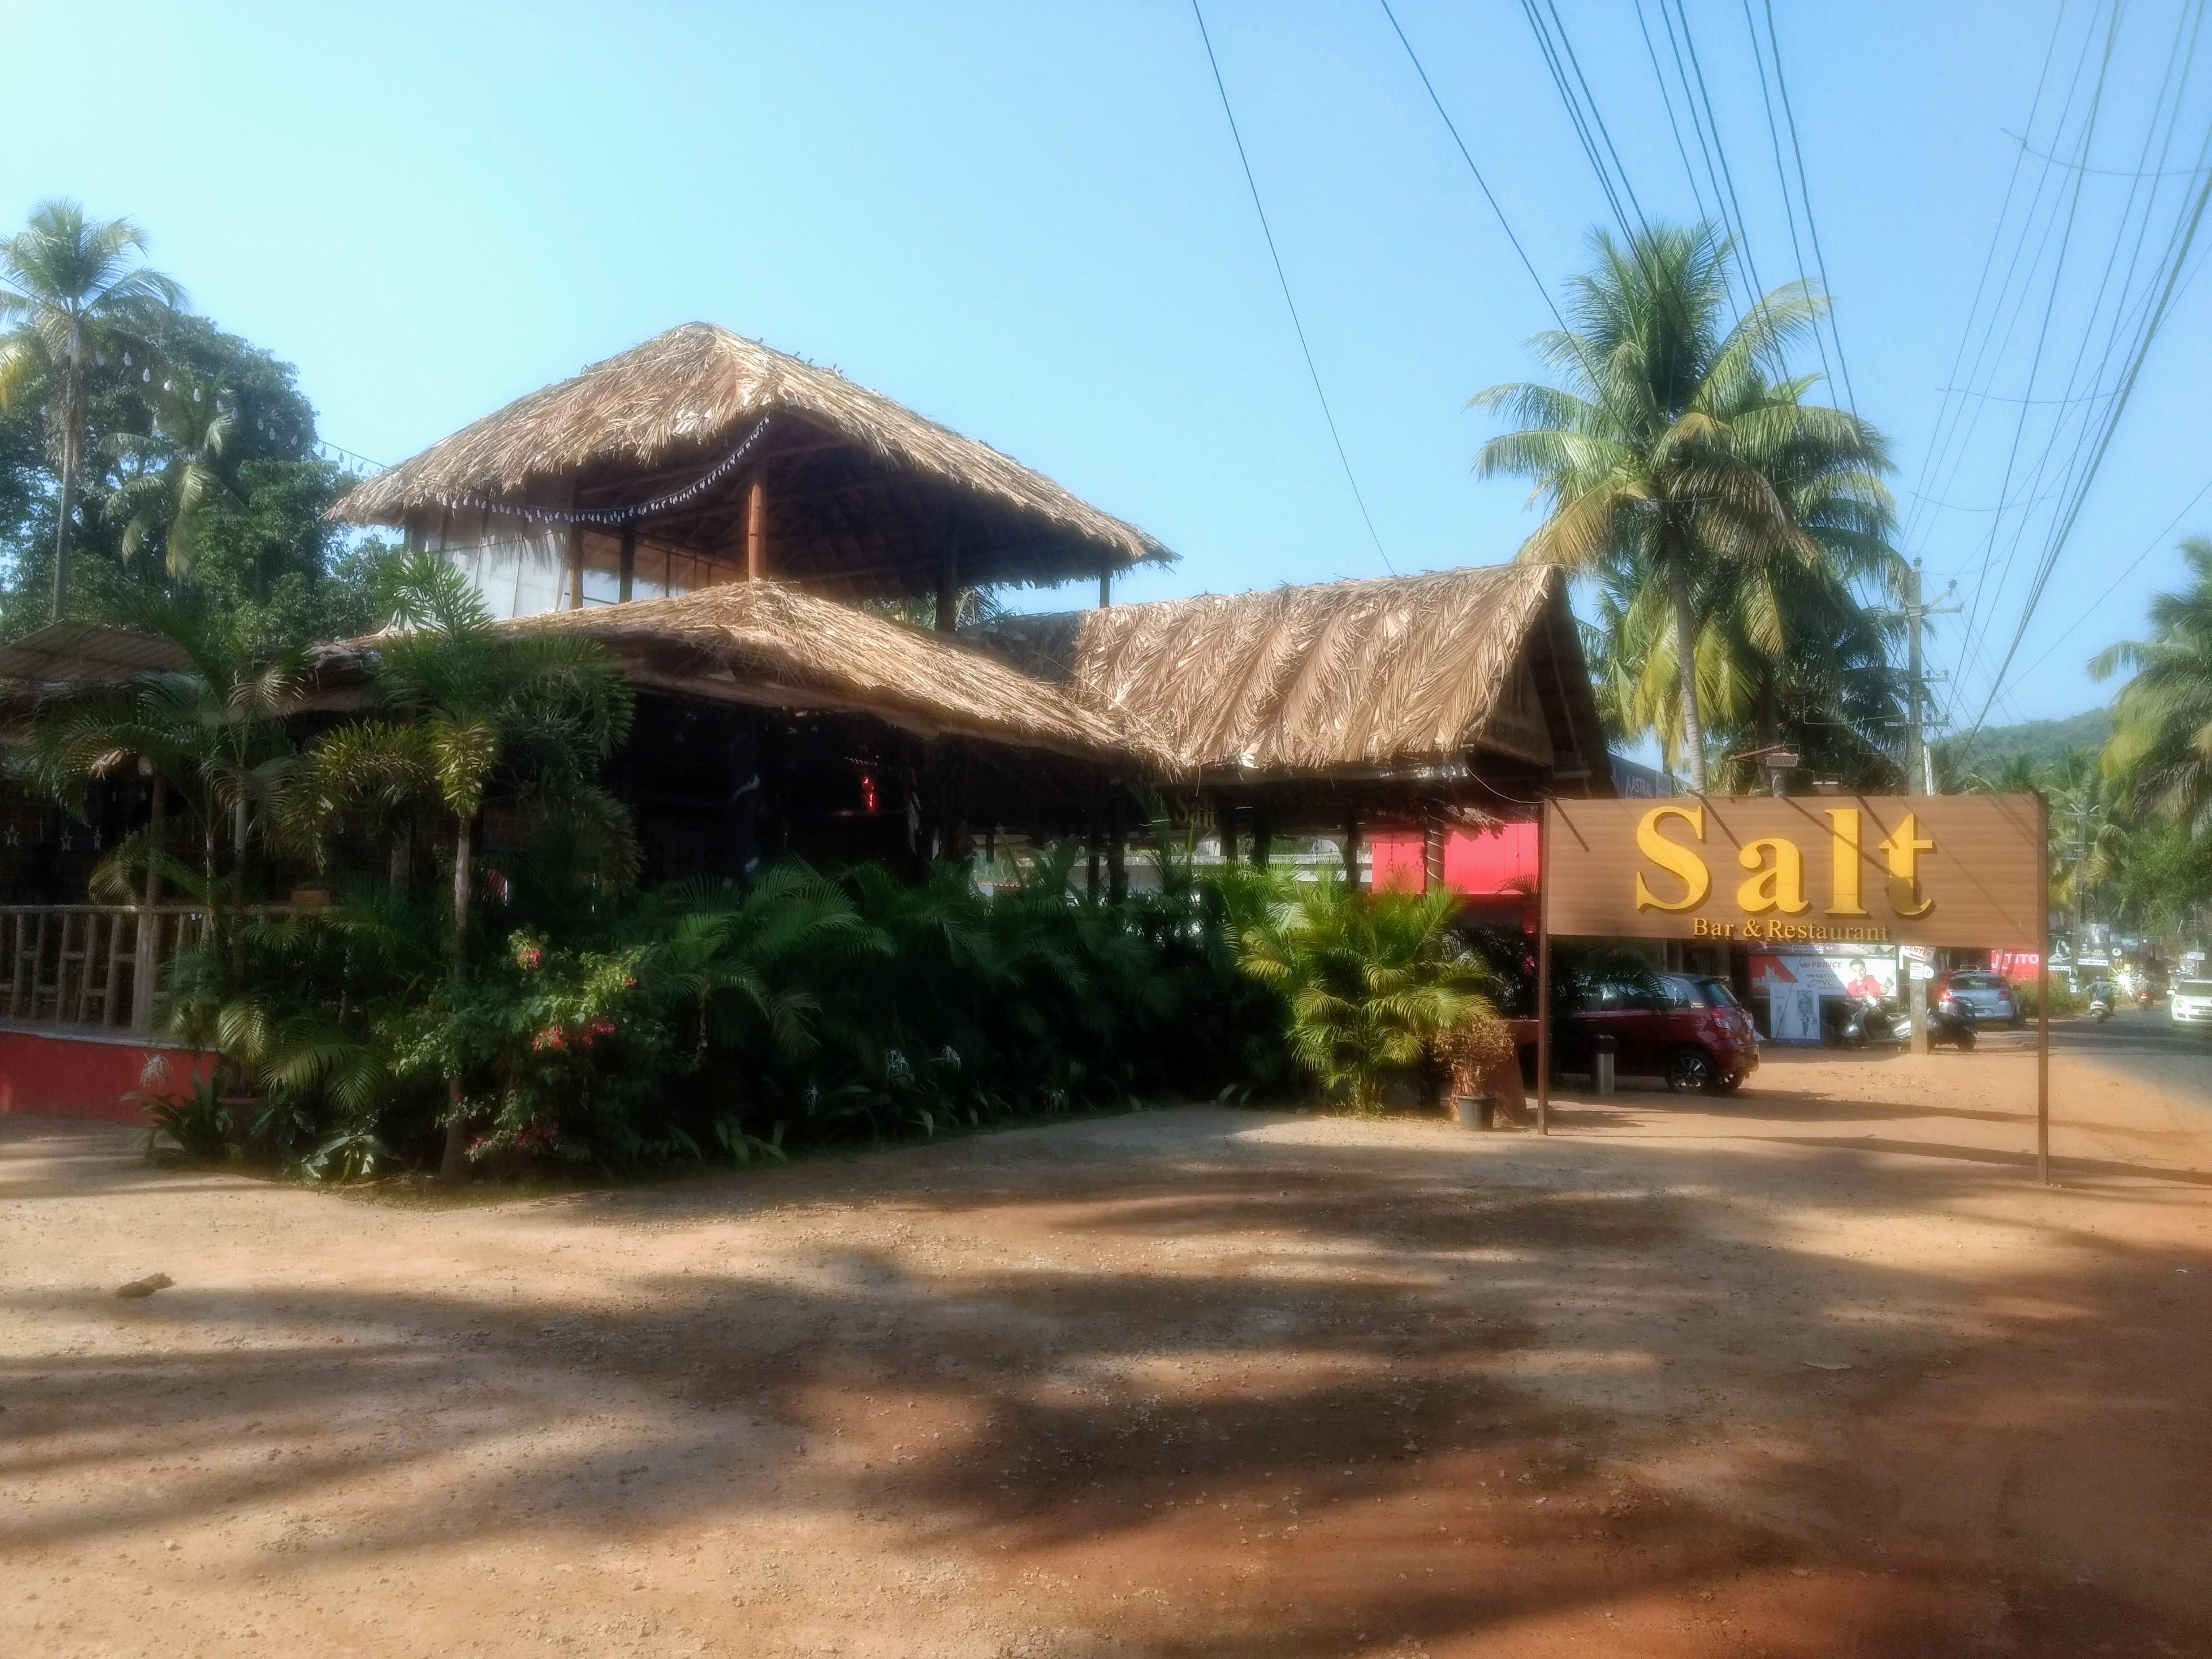 Salt Bar & Restaurant, Arpora, Goa, India